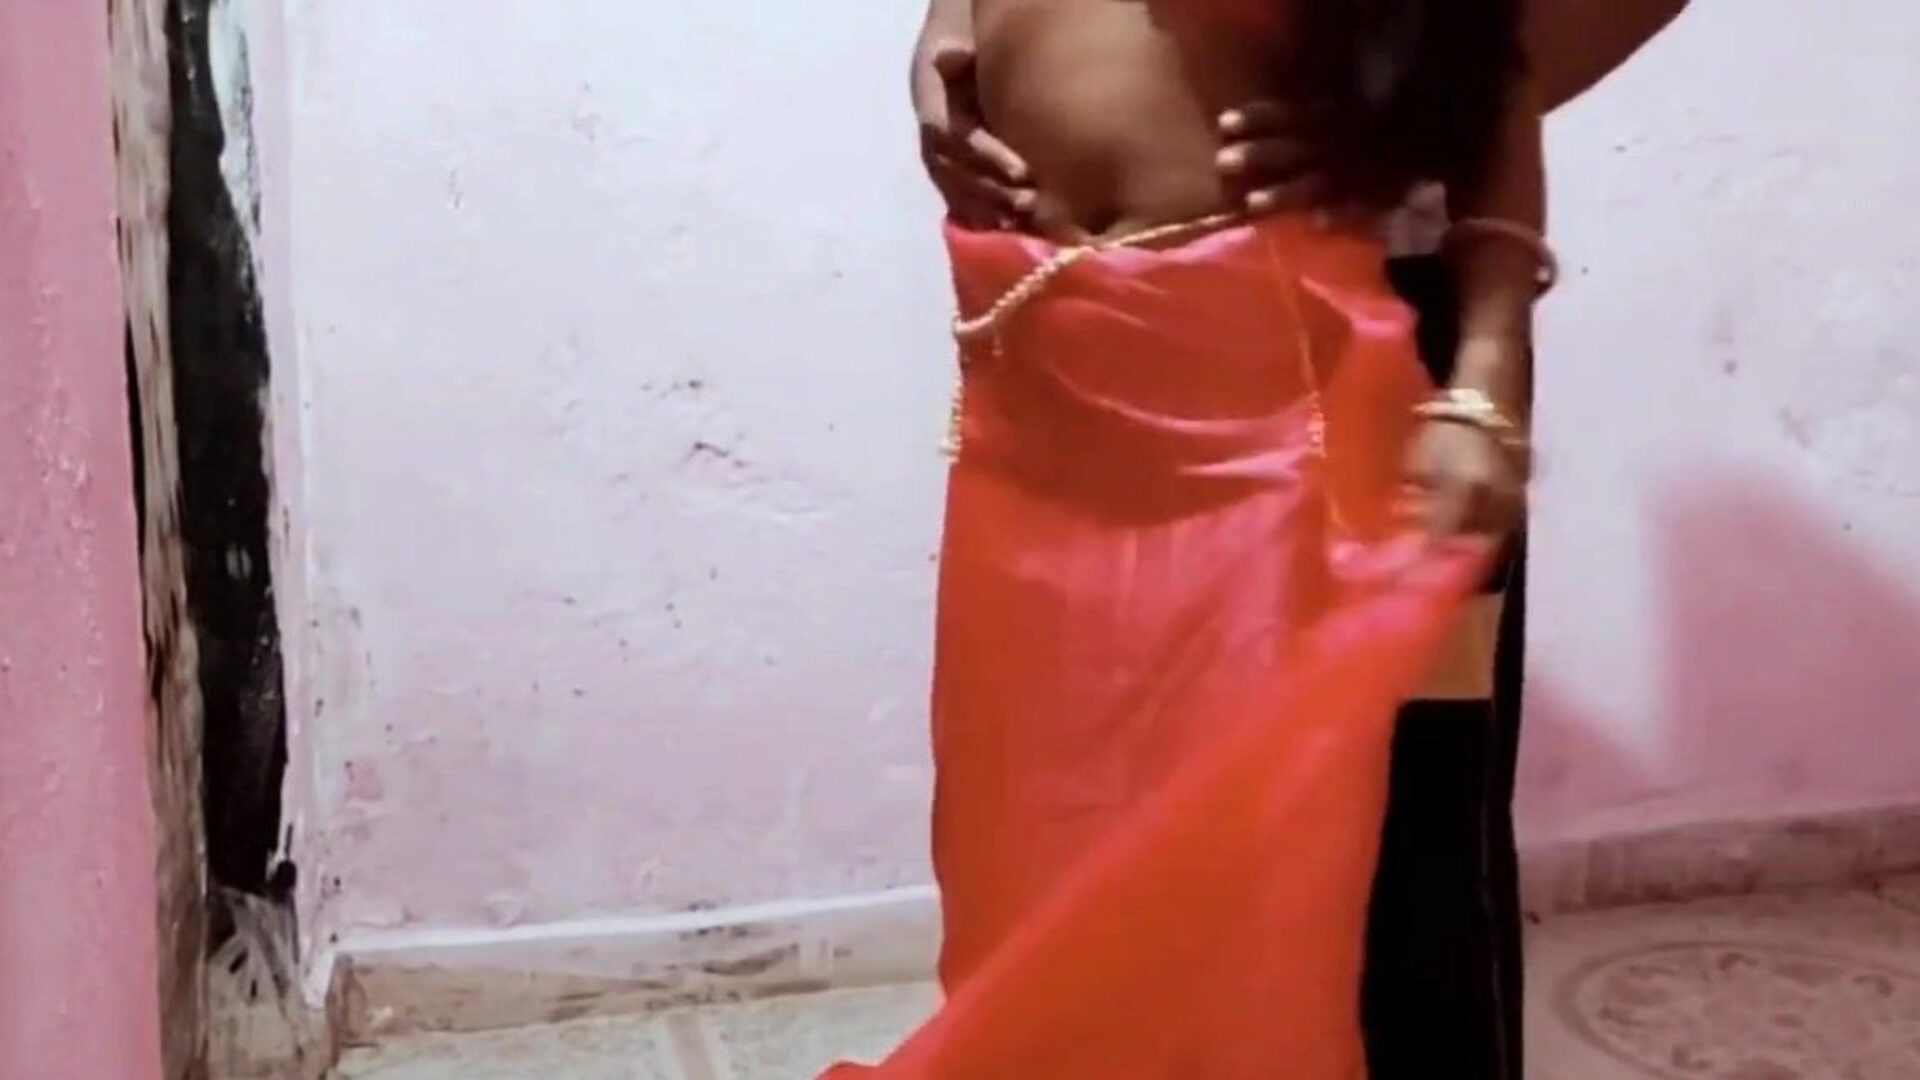 alex ne bhabhi ko choda room fun avec son mari: porno gratuit b9 regarder alex ne bhabhi ko choda room fun avec son mari scène de film sur xhamster - l'archive ultime de scènes de film gratuites pour tous sri-lankais asiatiques hd xxx pornographie tube